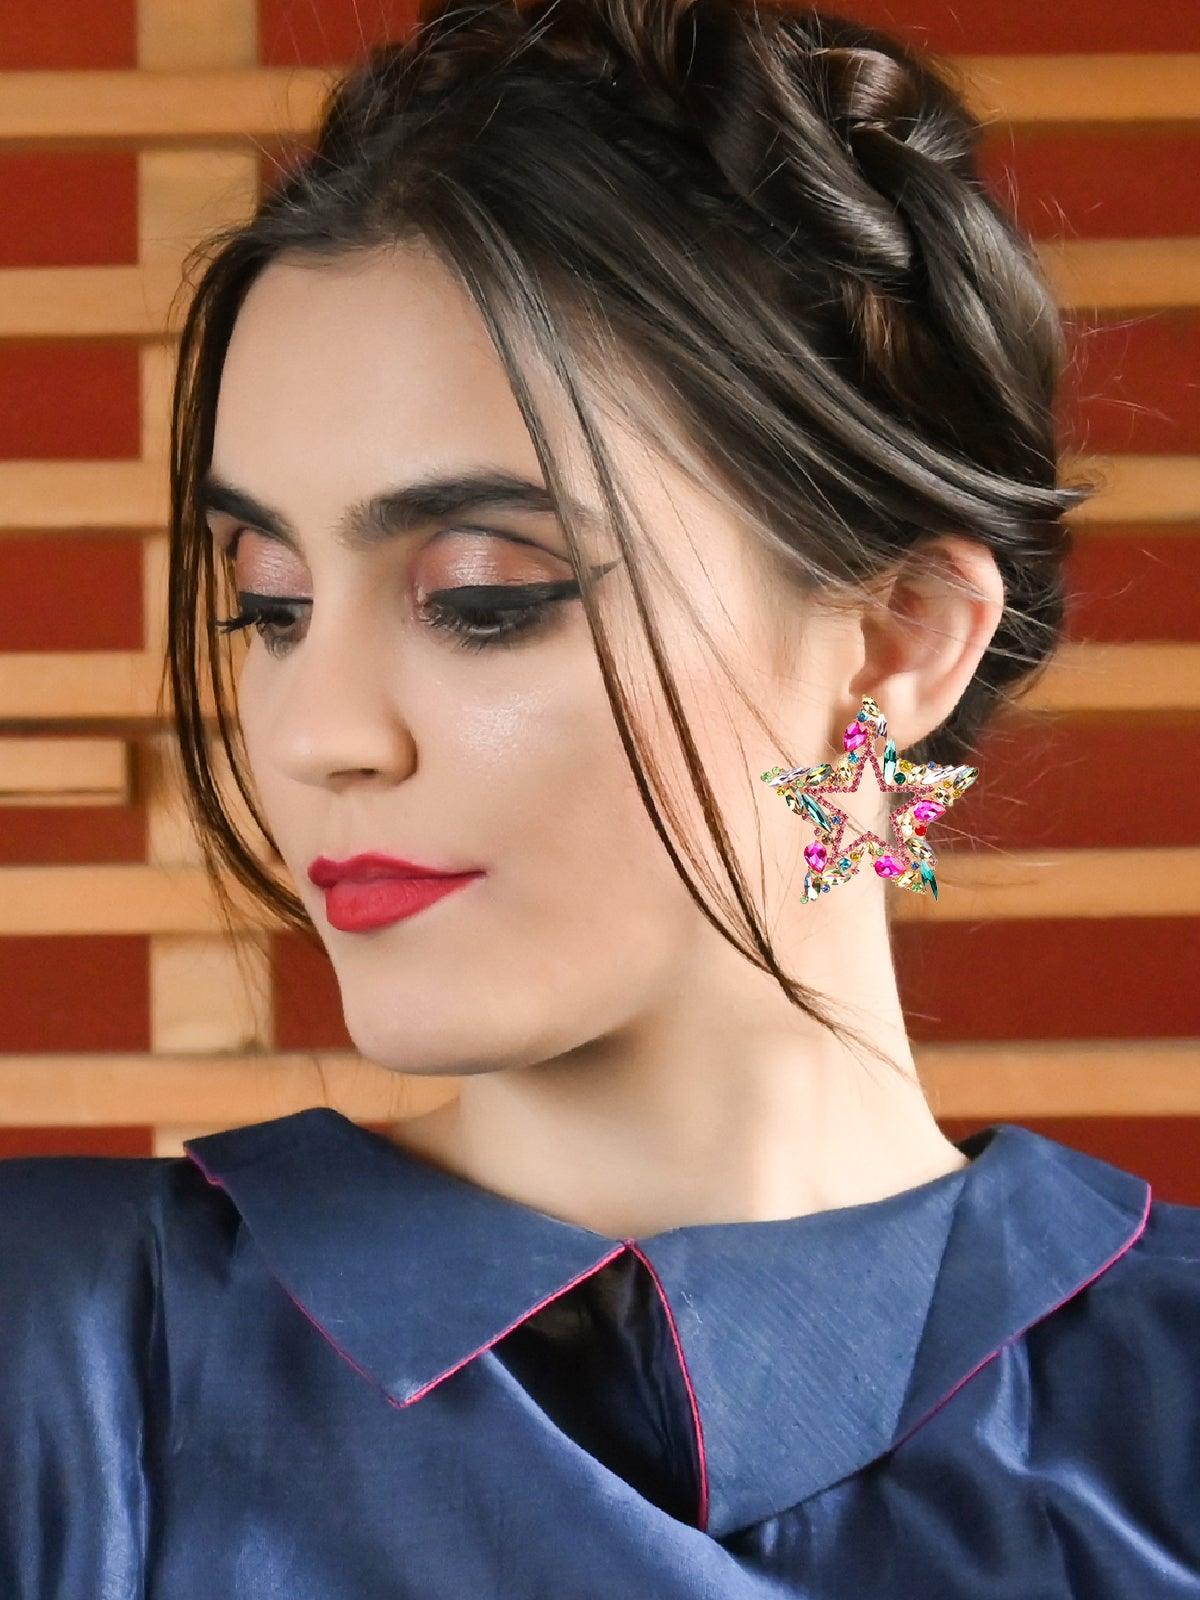 Women's Shining Multicoloured Star-Shaped Earrings - Odette